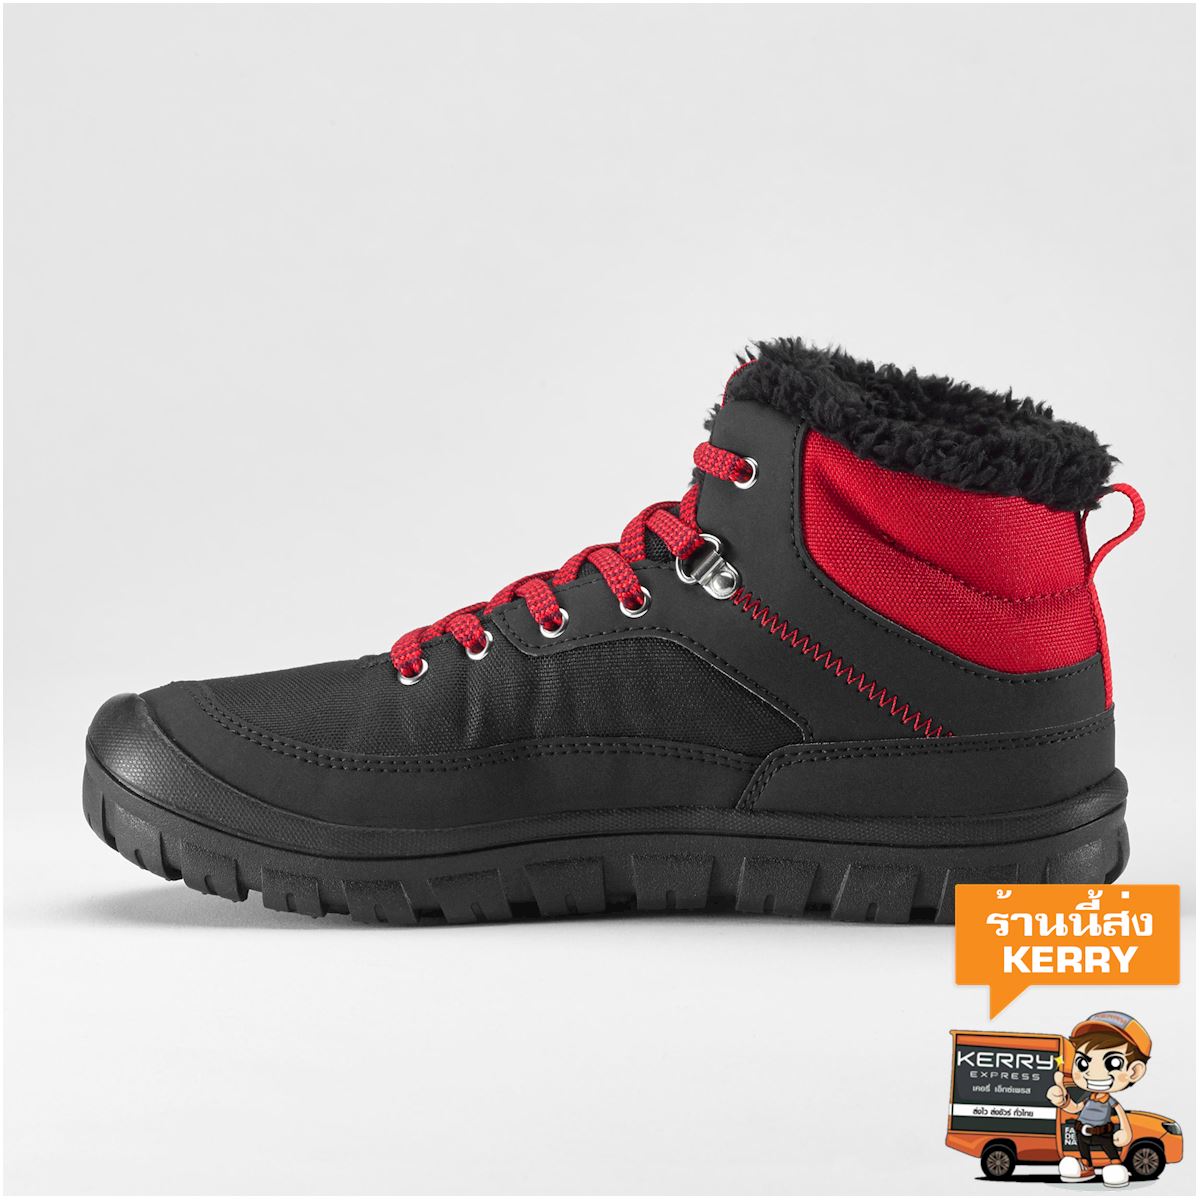 รองเท้าเด็กหุ้มข้อให้ความอบอุ่นแบบเชือกผูกสำหรับเดินป่าท่ามกลางหิมะรุ่น SH100 Warm (สีดำ) เด็กผู้ชาย 4 ถึง 16 ปี เดินป่า รองเท้ากีฬา รองเท้า เดินป่าไฮกิ้ง